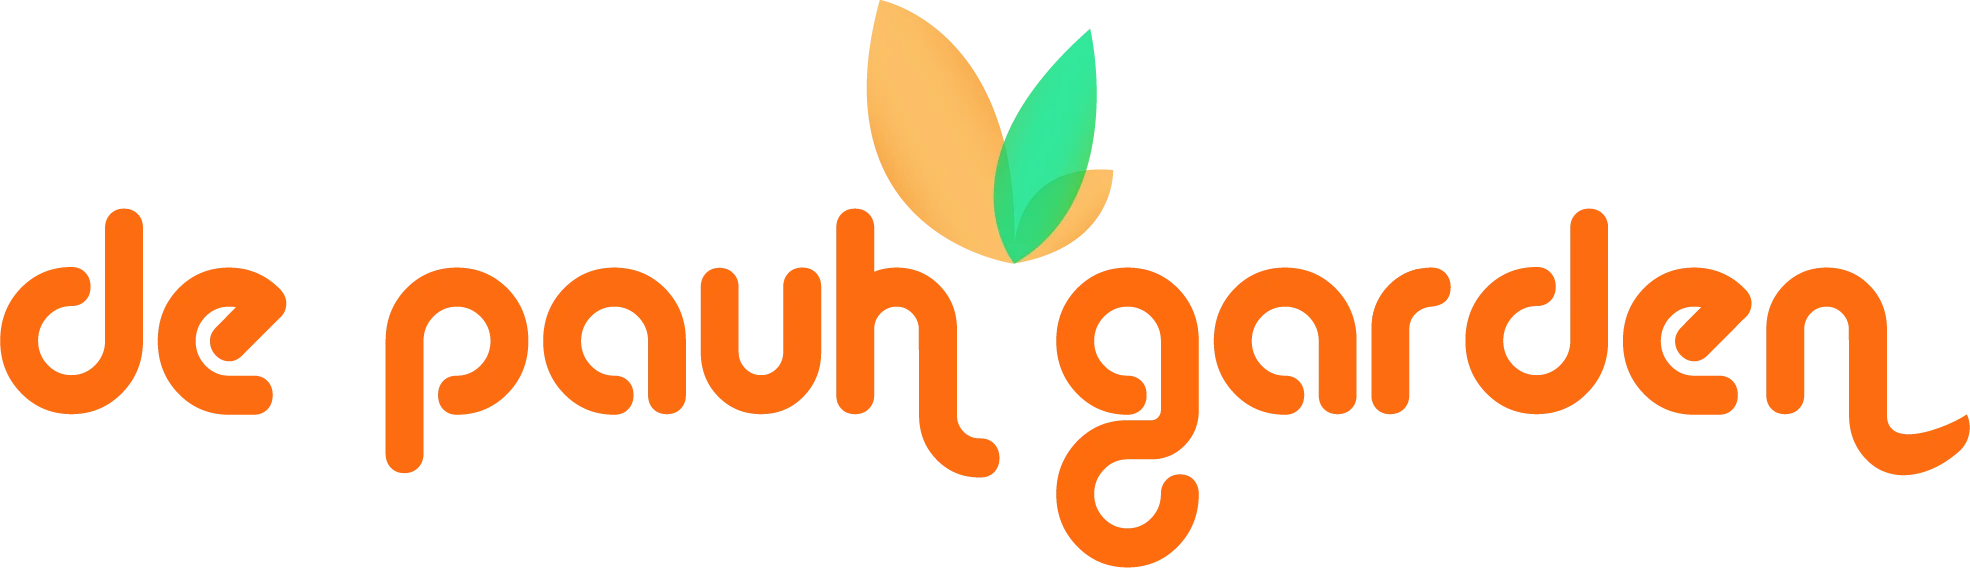 De Pauh Garden Logo